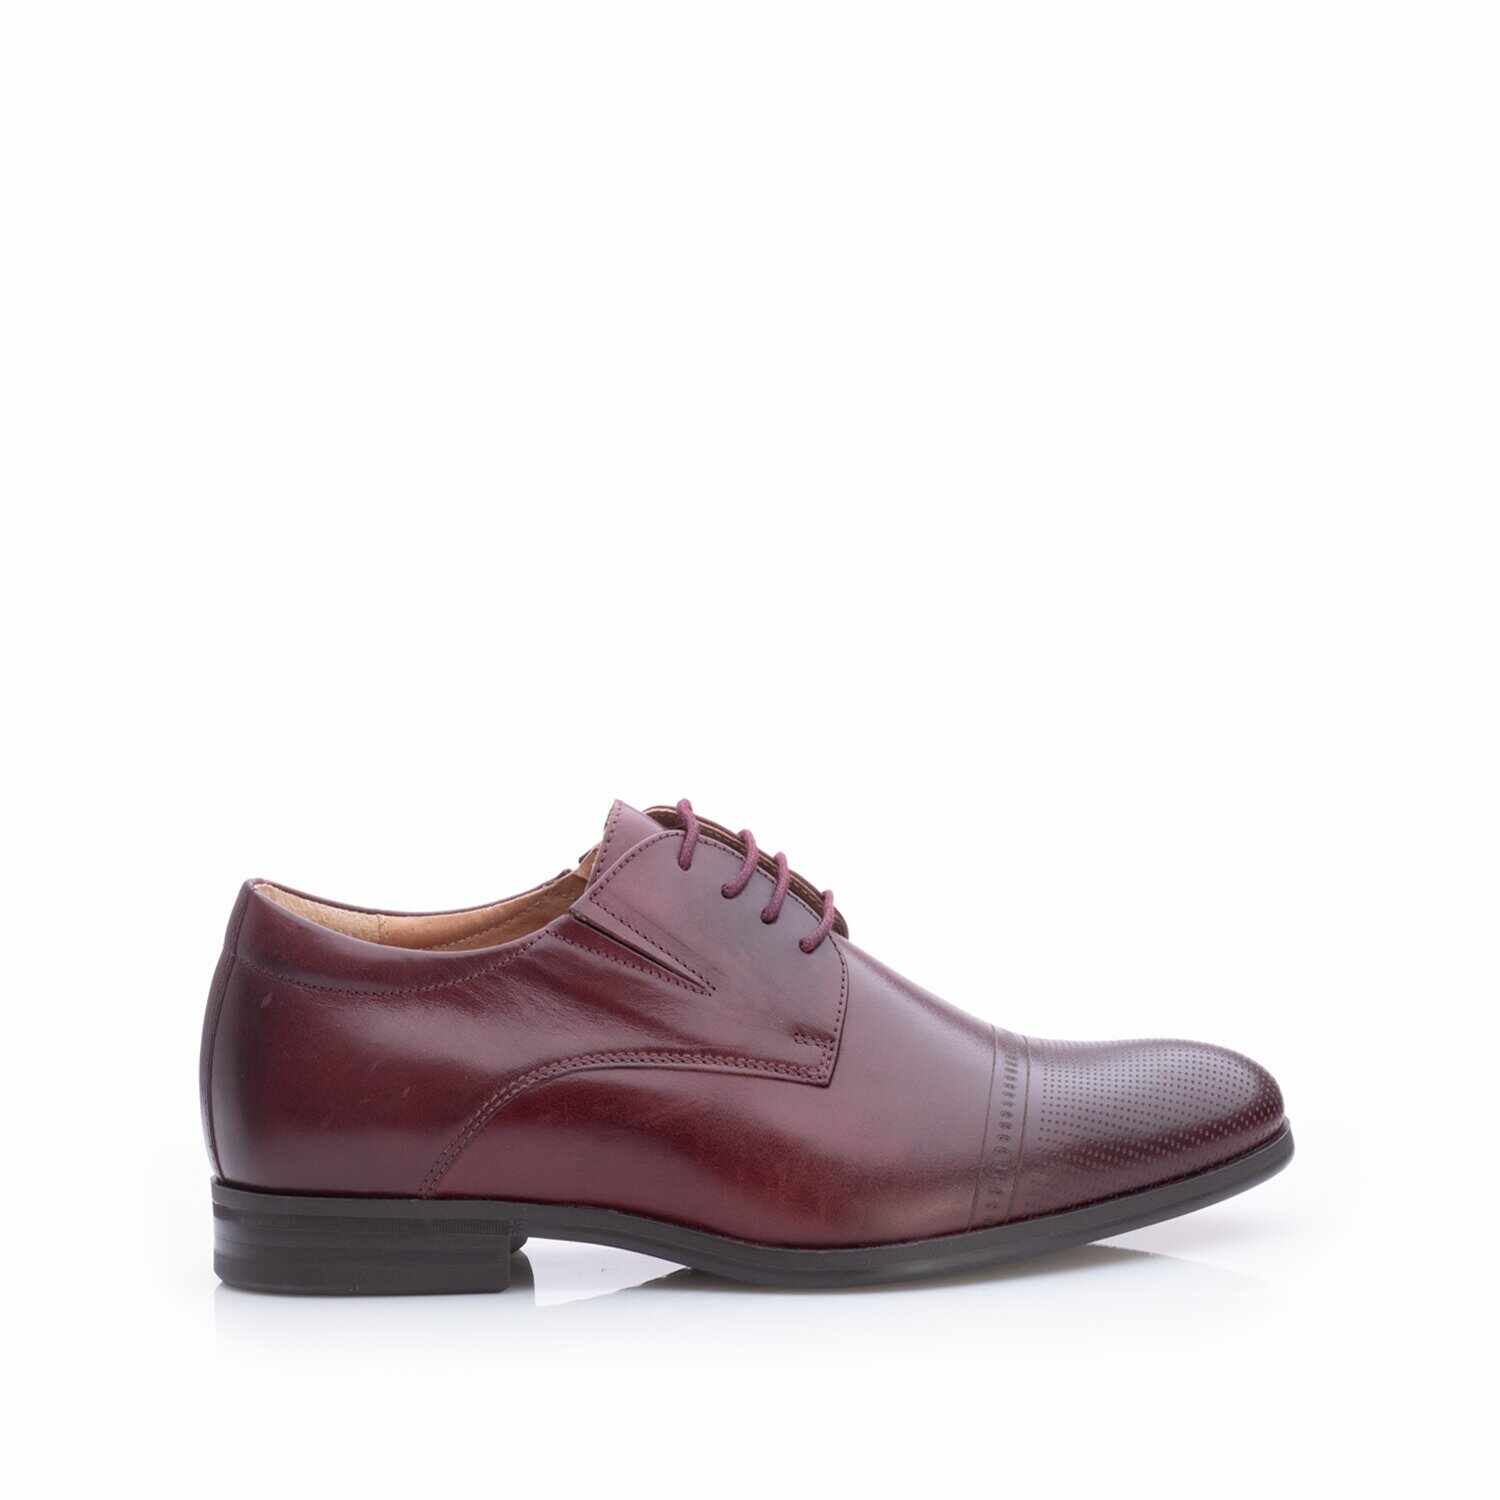 Pantofi eleganţi bărbaţi din piele naturală, Leofex - 522 Vişiniu Box